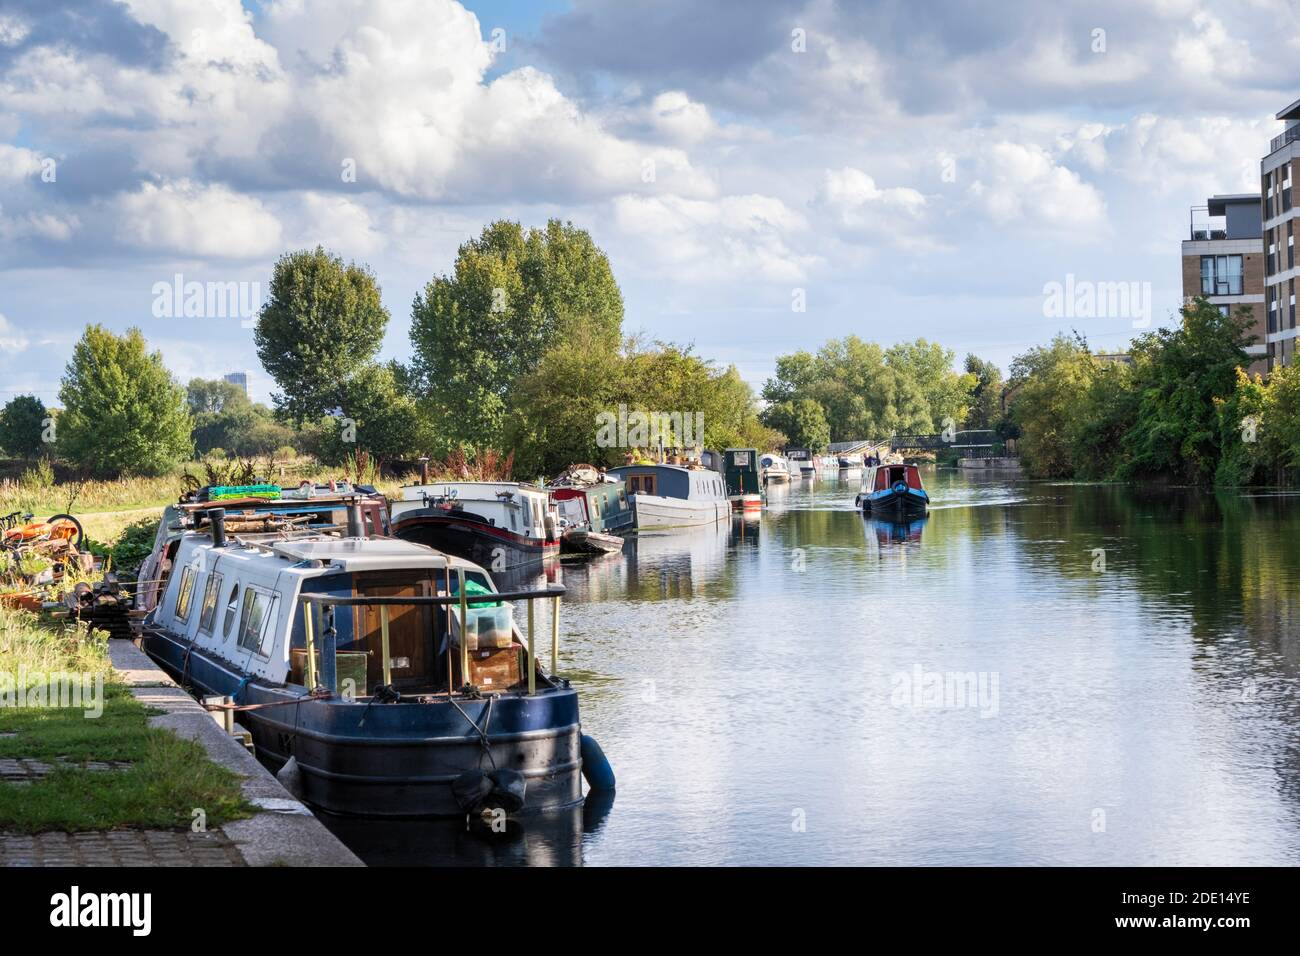 Tiro de verano de barcos de canal amarrados en el río Lea, Londres del este, Londres, Inglaterra, Reino Unido, Europa Foto de stock